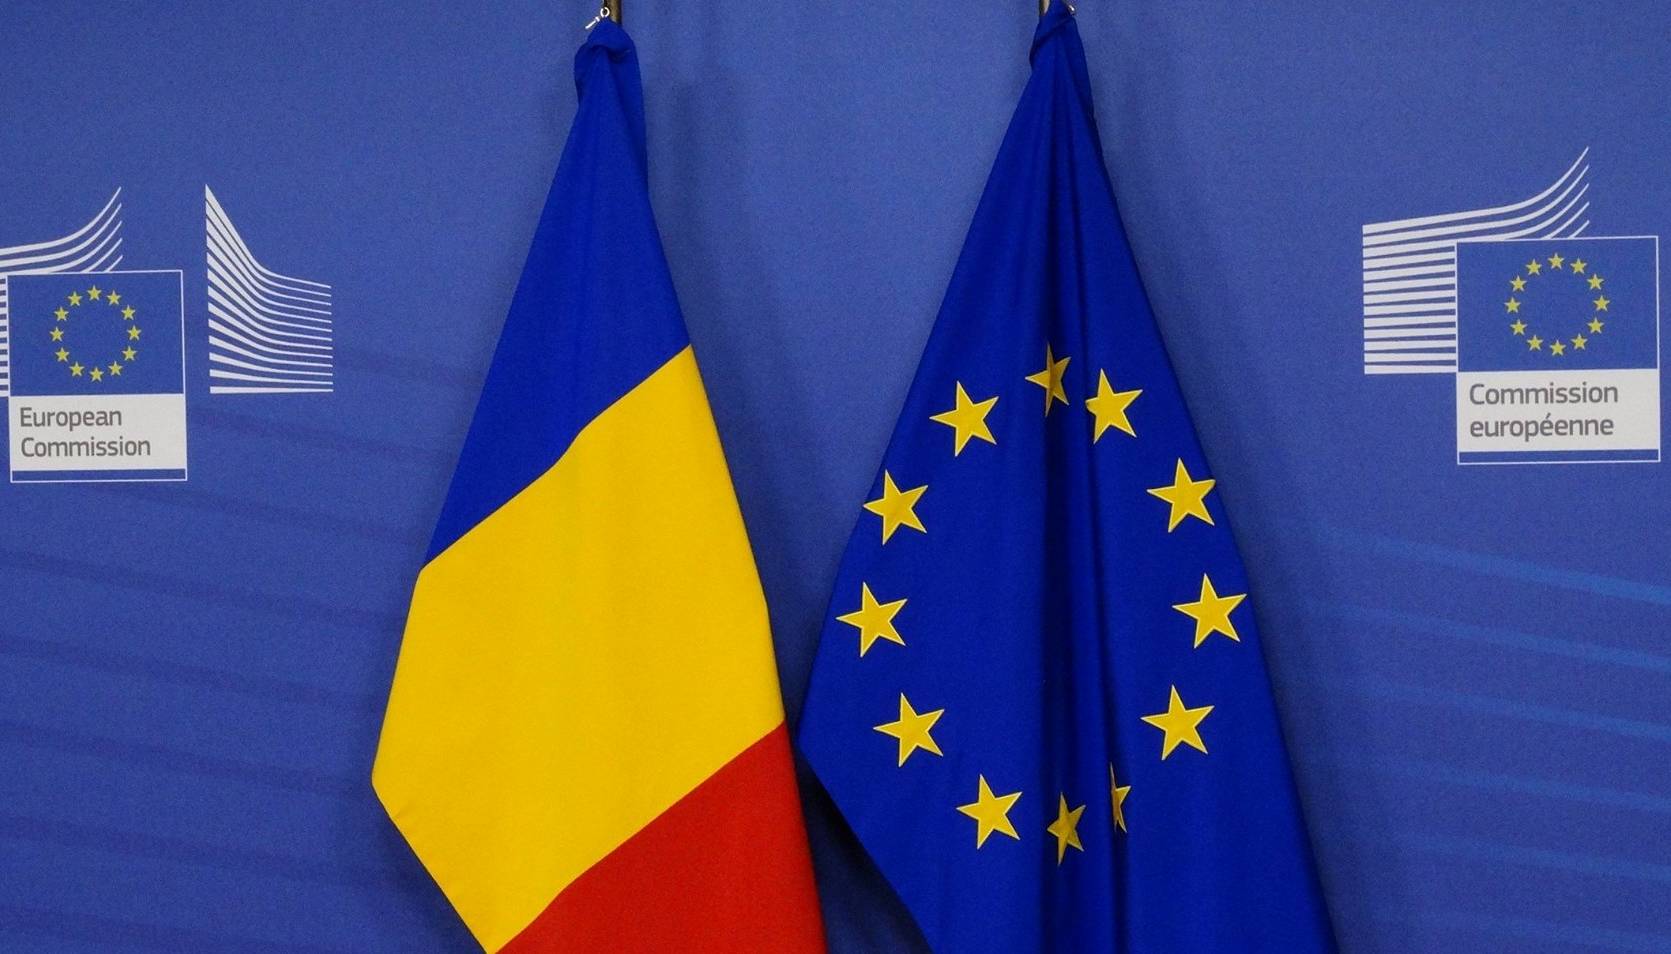 Commission européenne L'Ukraine devrait obtenir le statut de pays candidat dès que possible